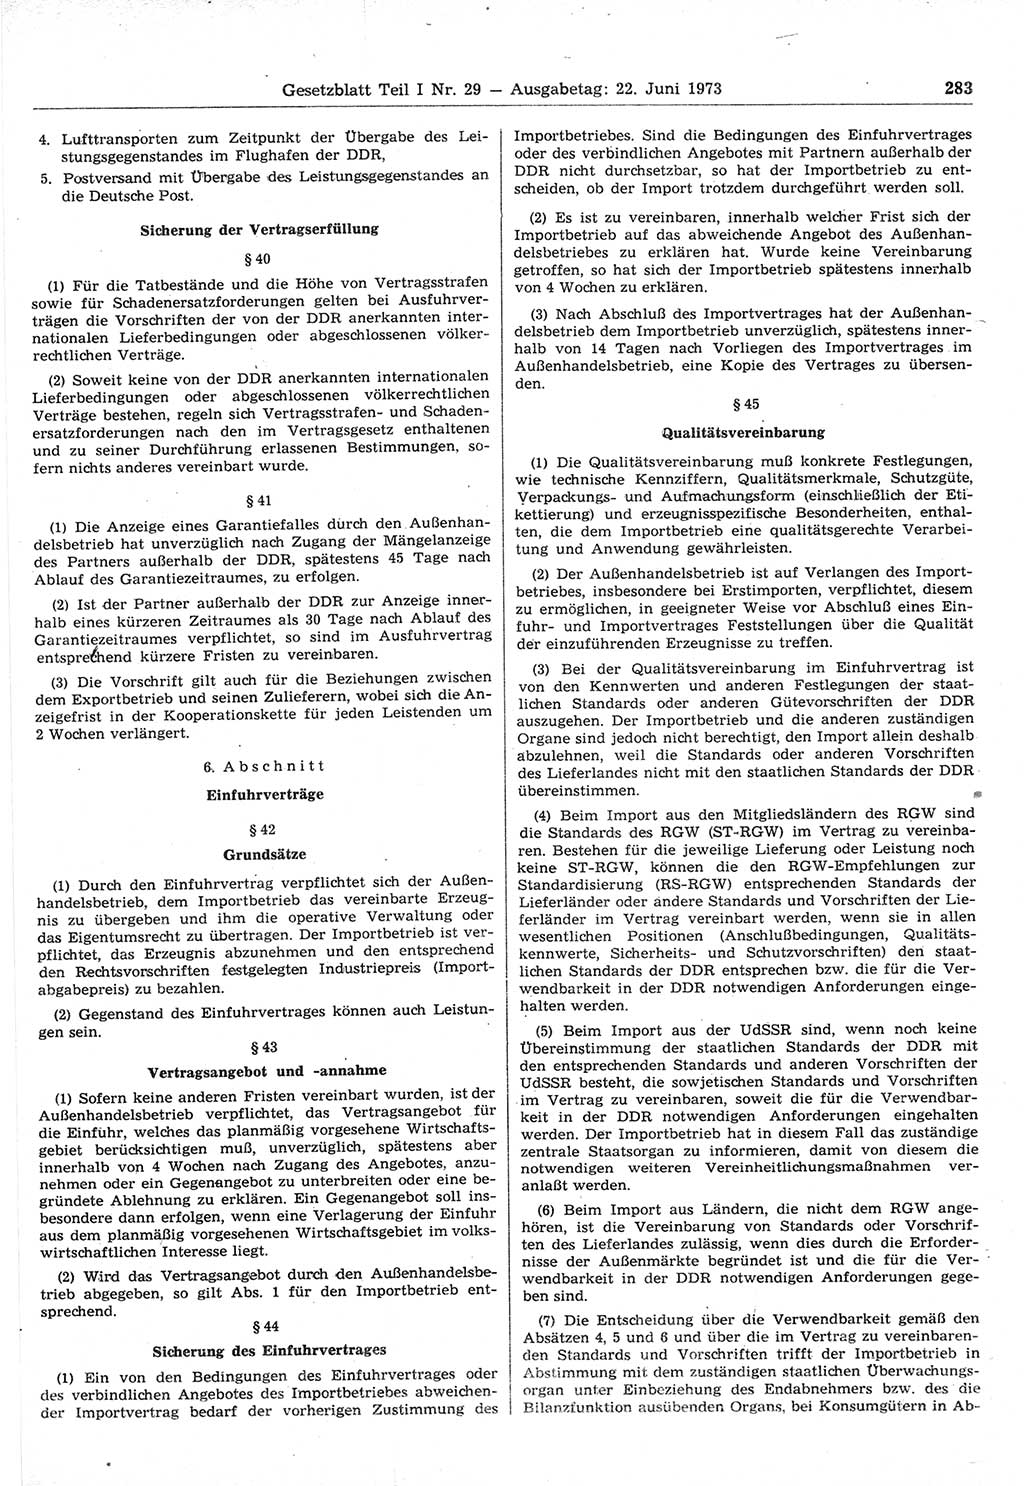 Gesetzblatt (GBl.) der Deutschen Demokratischen Republik (DDR) Teil Ⅰ 1973, Seite 283 (GBl. DDR Ⅰ 1973, S. 283)